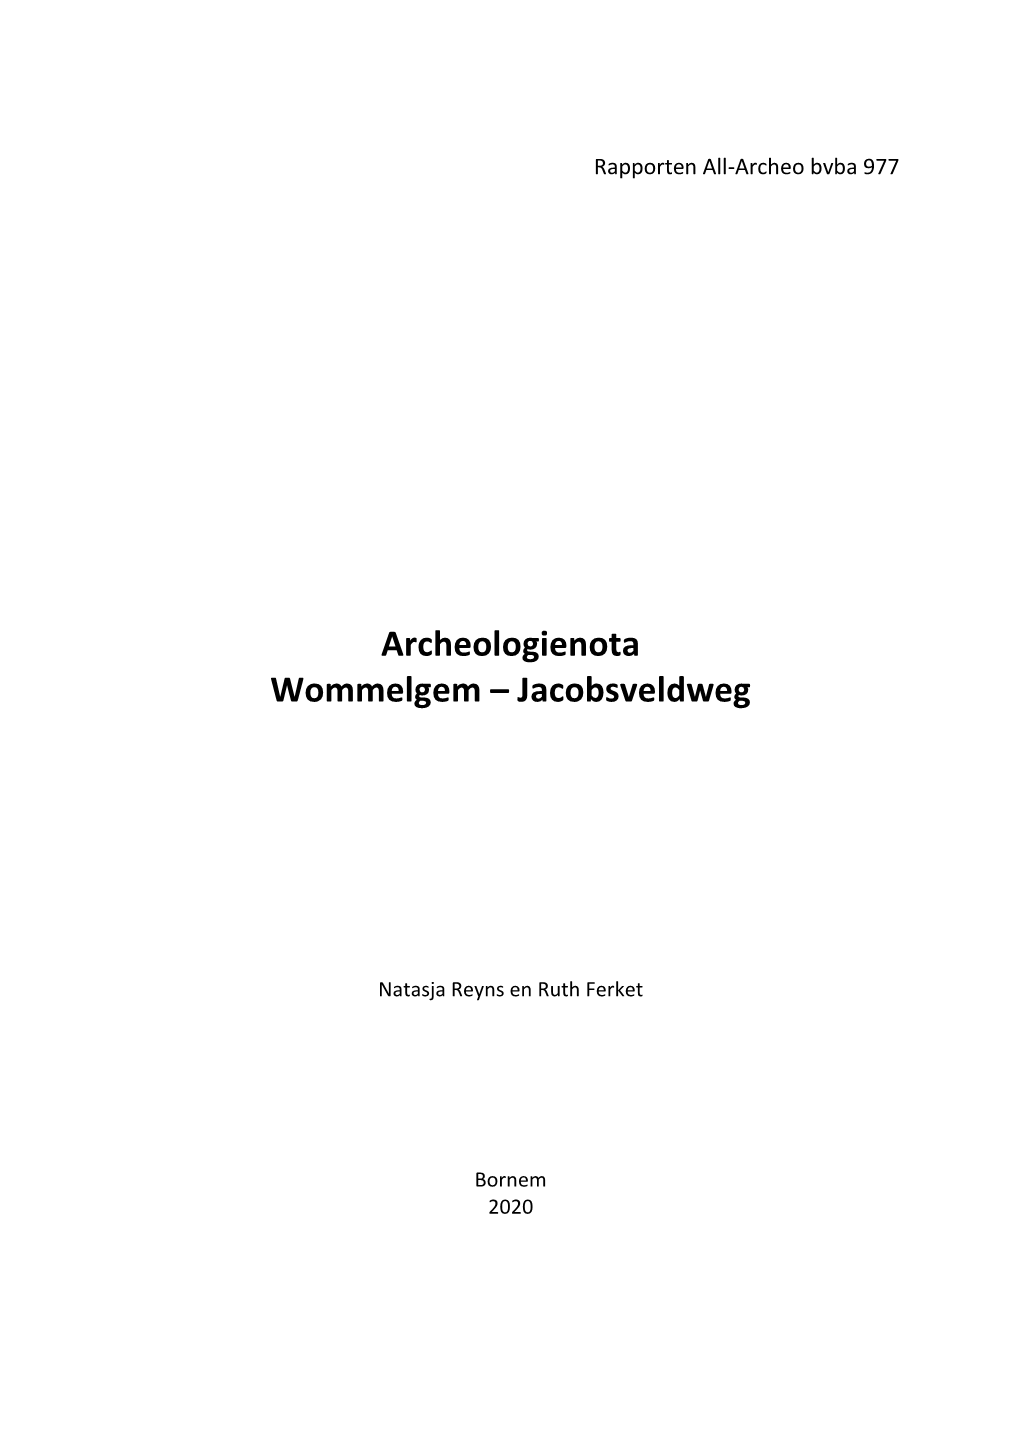 Archeologienota Wommelgem – Jacobsveldweg